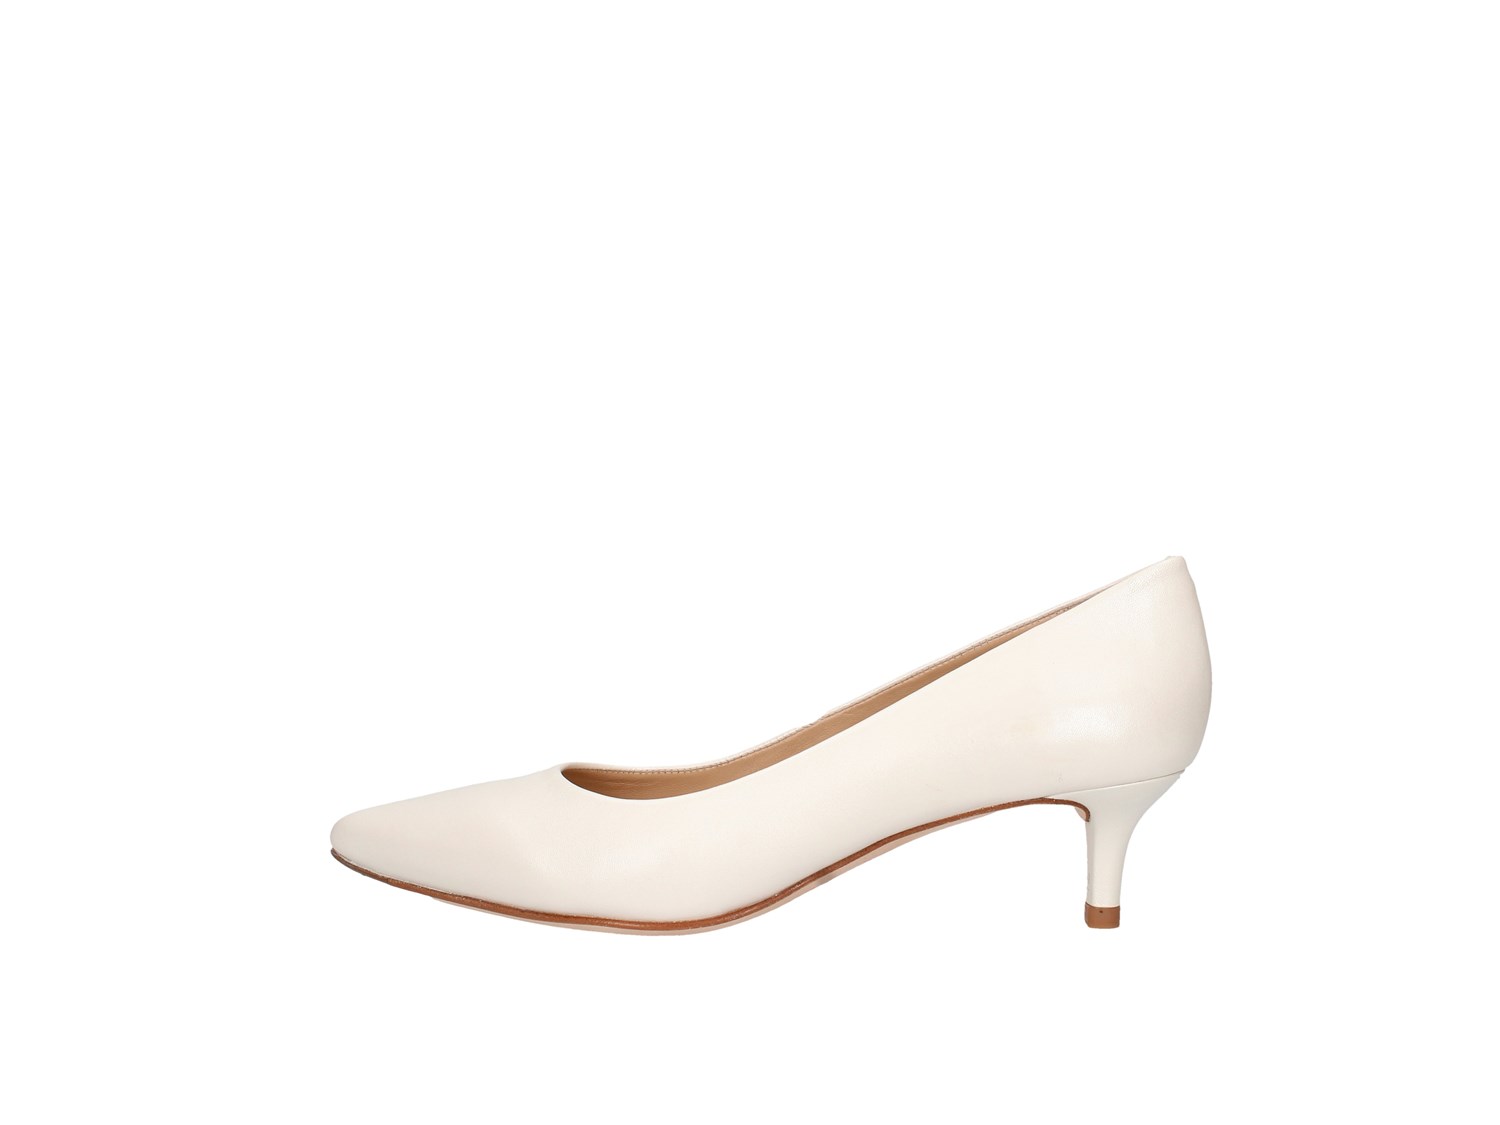 Unisa Jaled Ivory Shoes Women Heels'